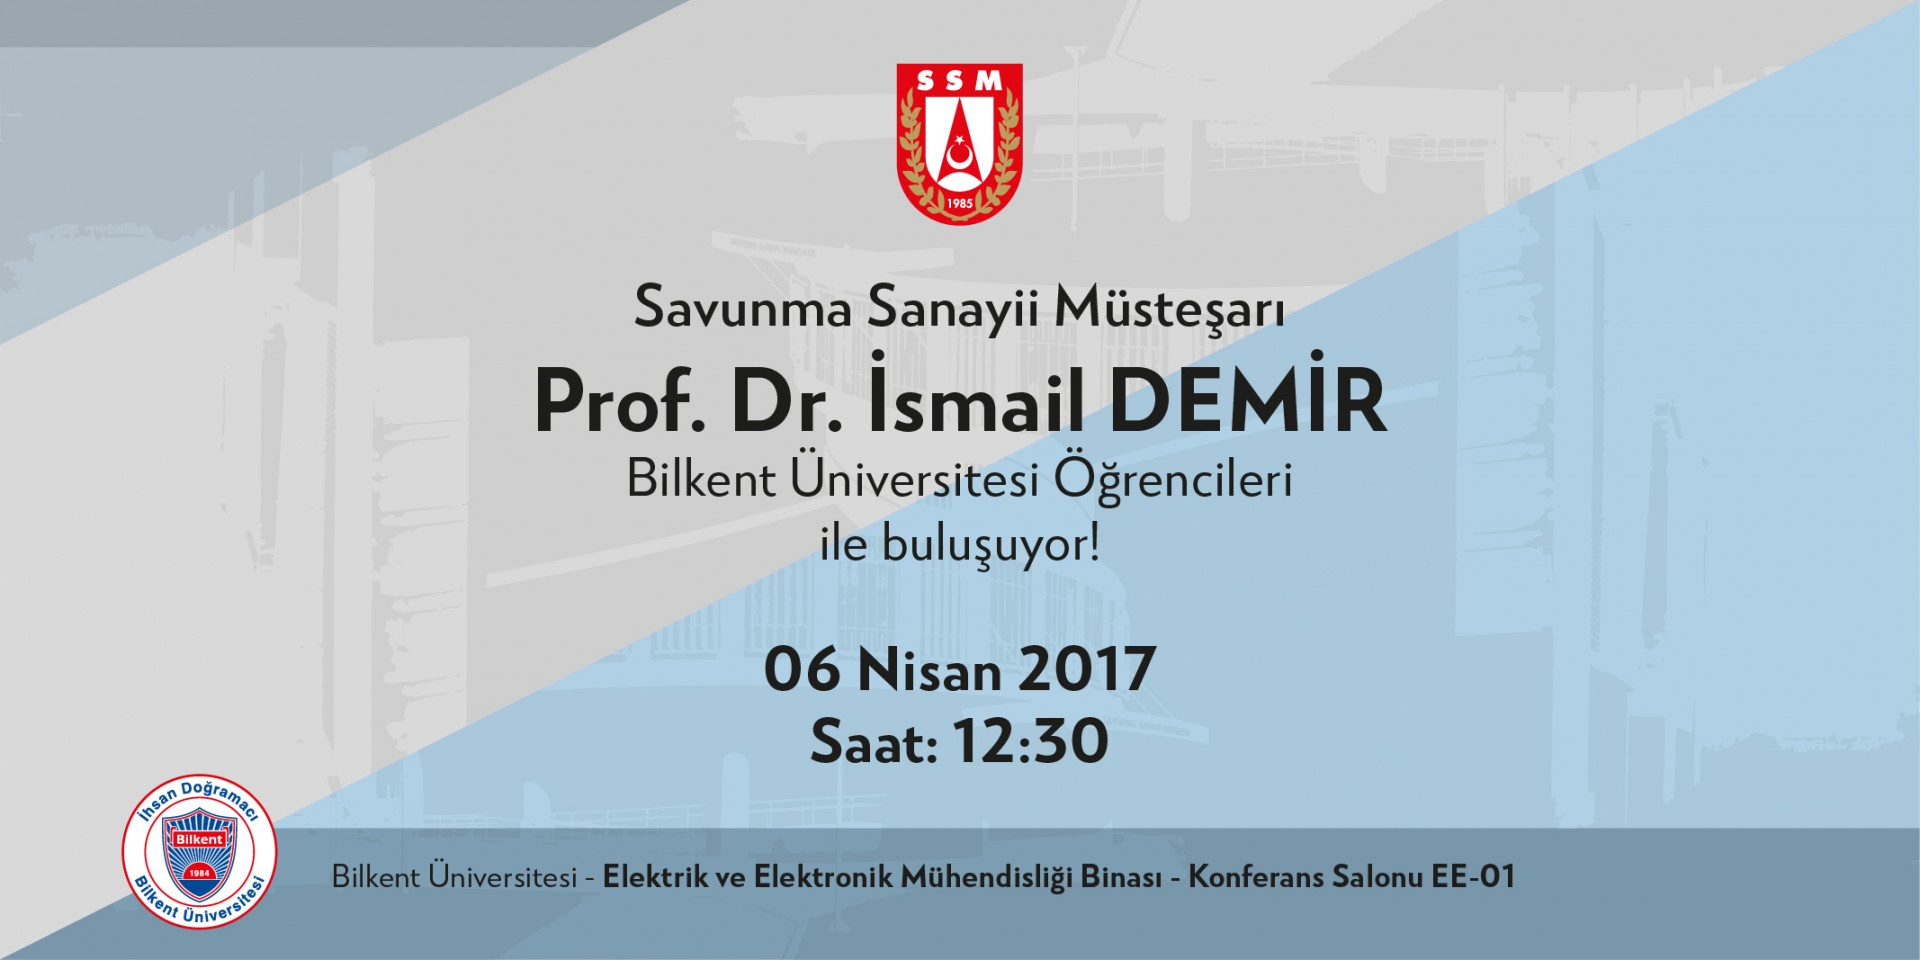 Savunma Sanayii Müşteşarı Prof. Dr. İsmail Demir Bilkent Üniversitesi Öğrencileri ile buluşuyor! 1